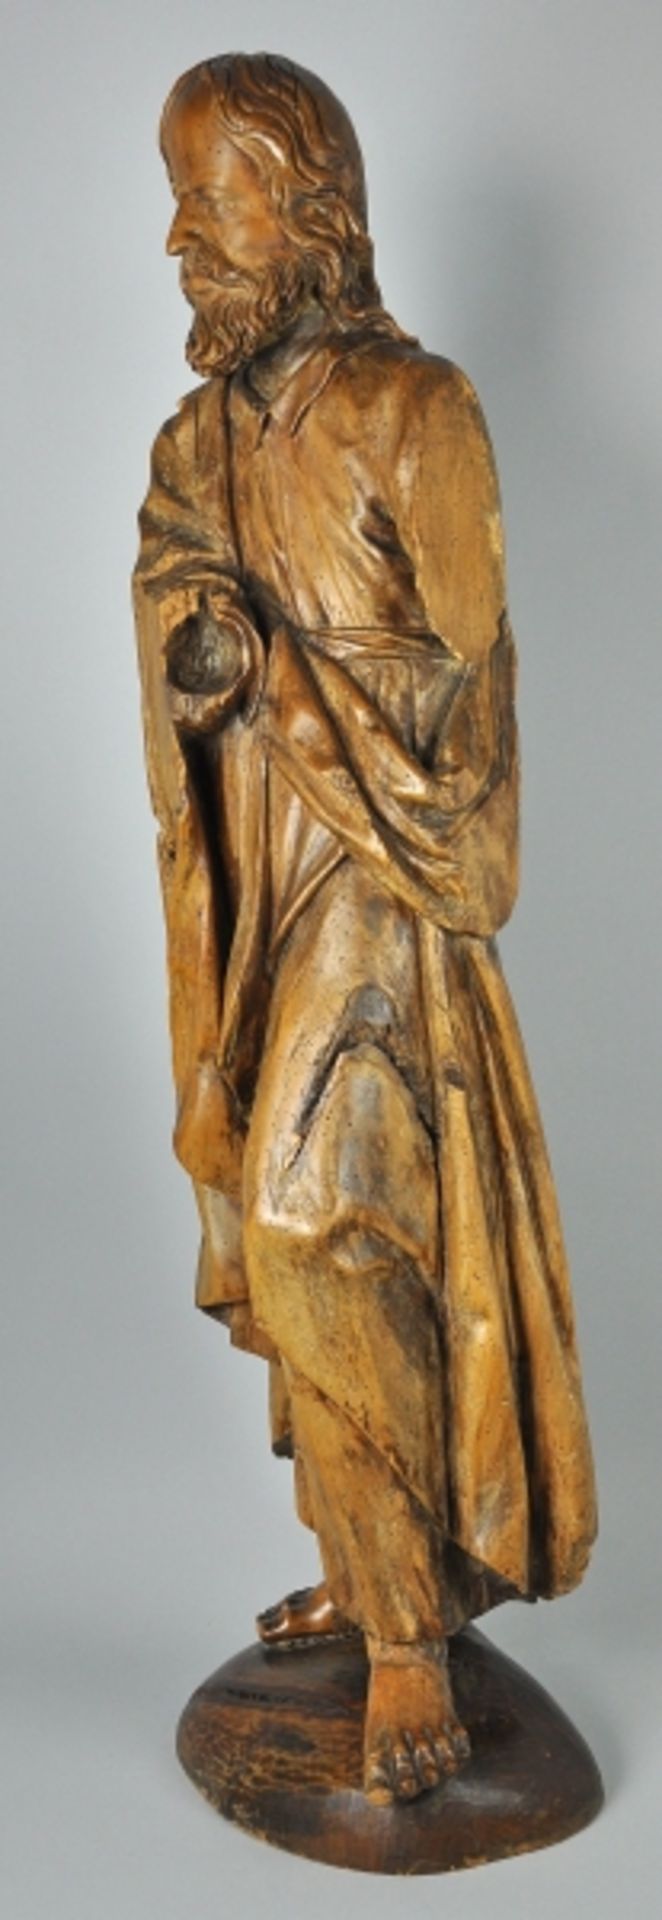 CHRISTUS 3/4 rund geschnitzte Holzfigur, Rückseite gehöhlt, 17./18.Jh, auf späterer ovaler Basis, - Bild 5 aus 7